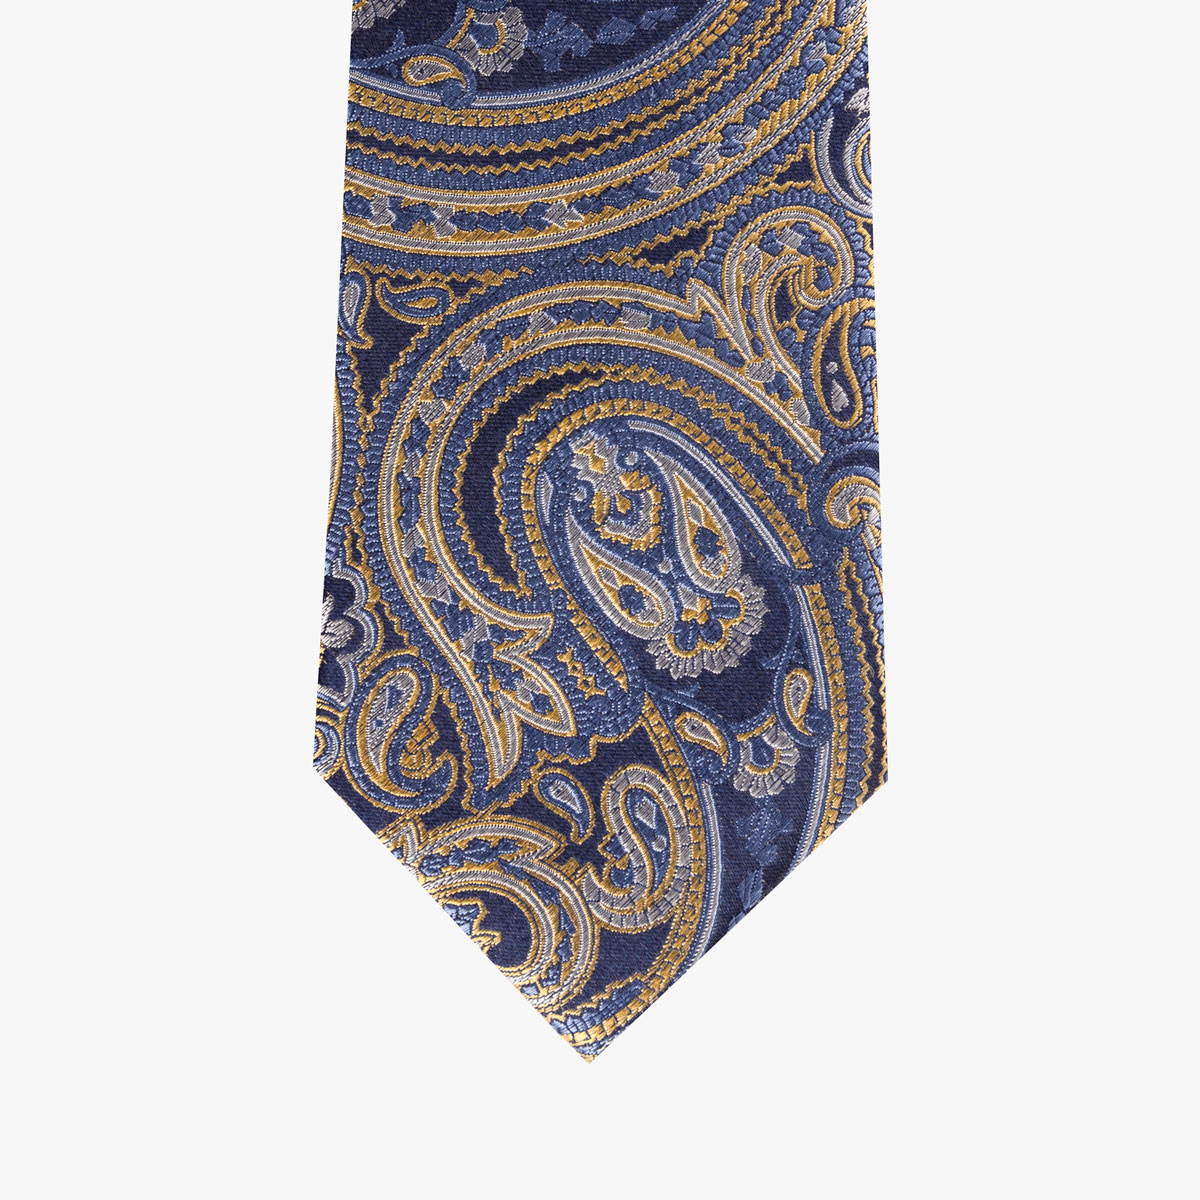 Krawatte aus Seide in dunkelblau mit goldenem Muster